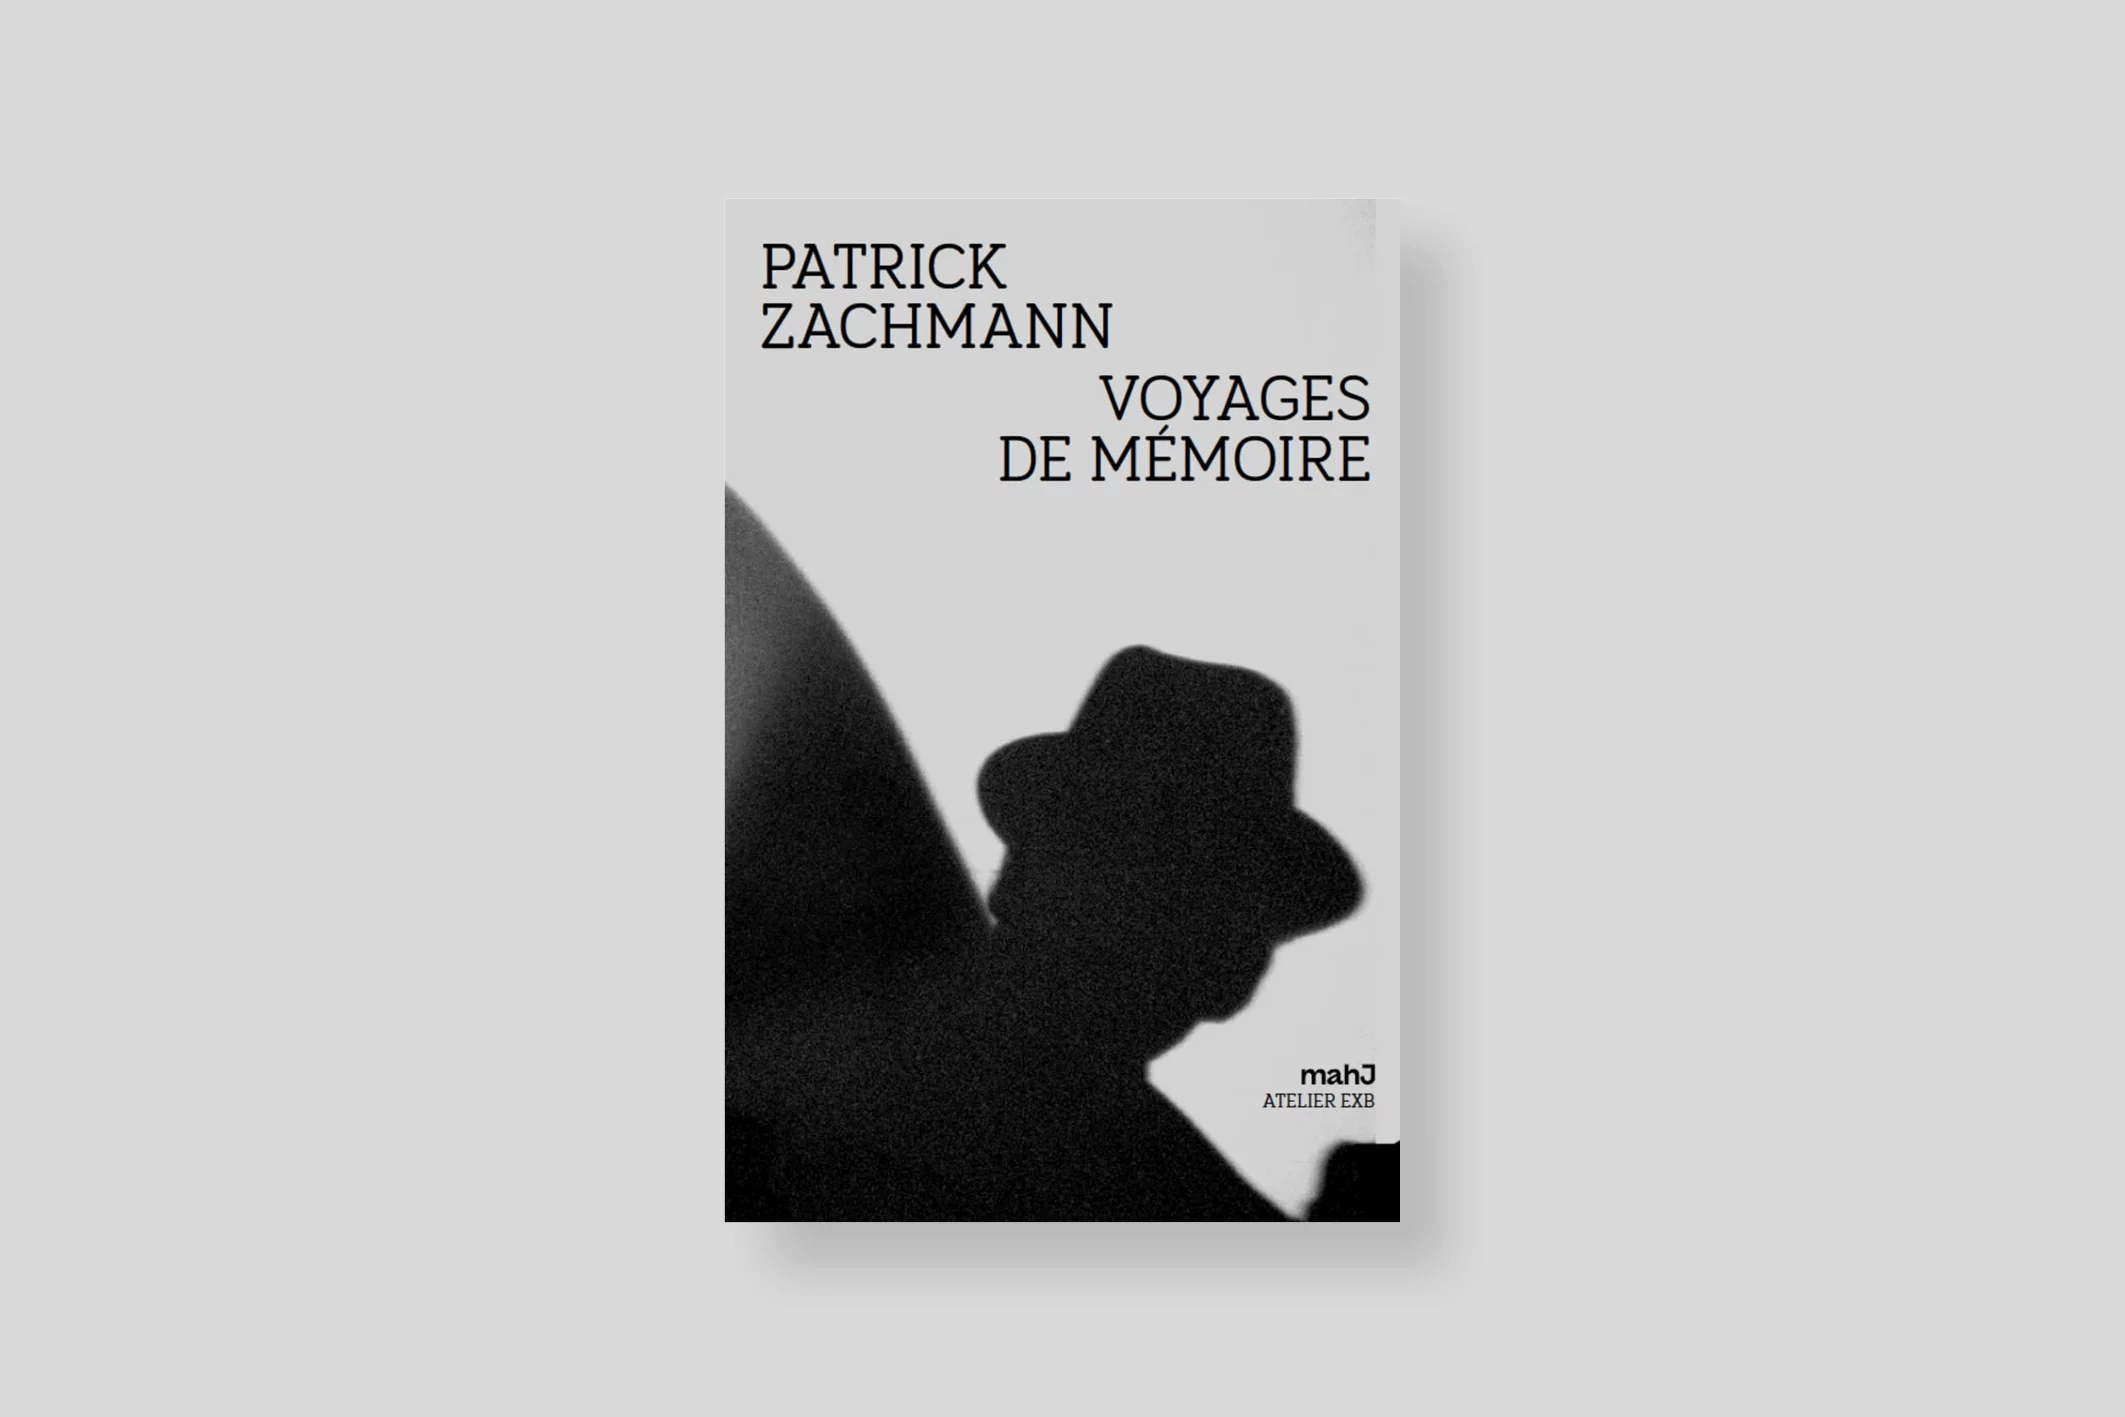 voyages-de-memoire-zachmann-atelier-exb-cover